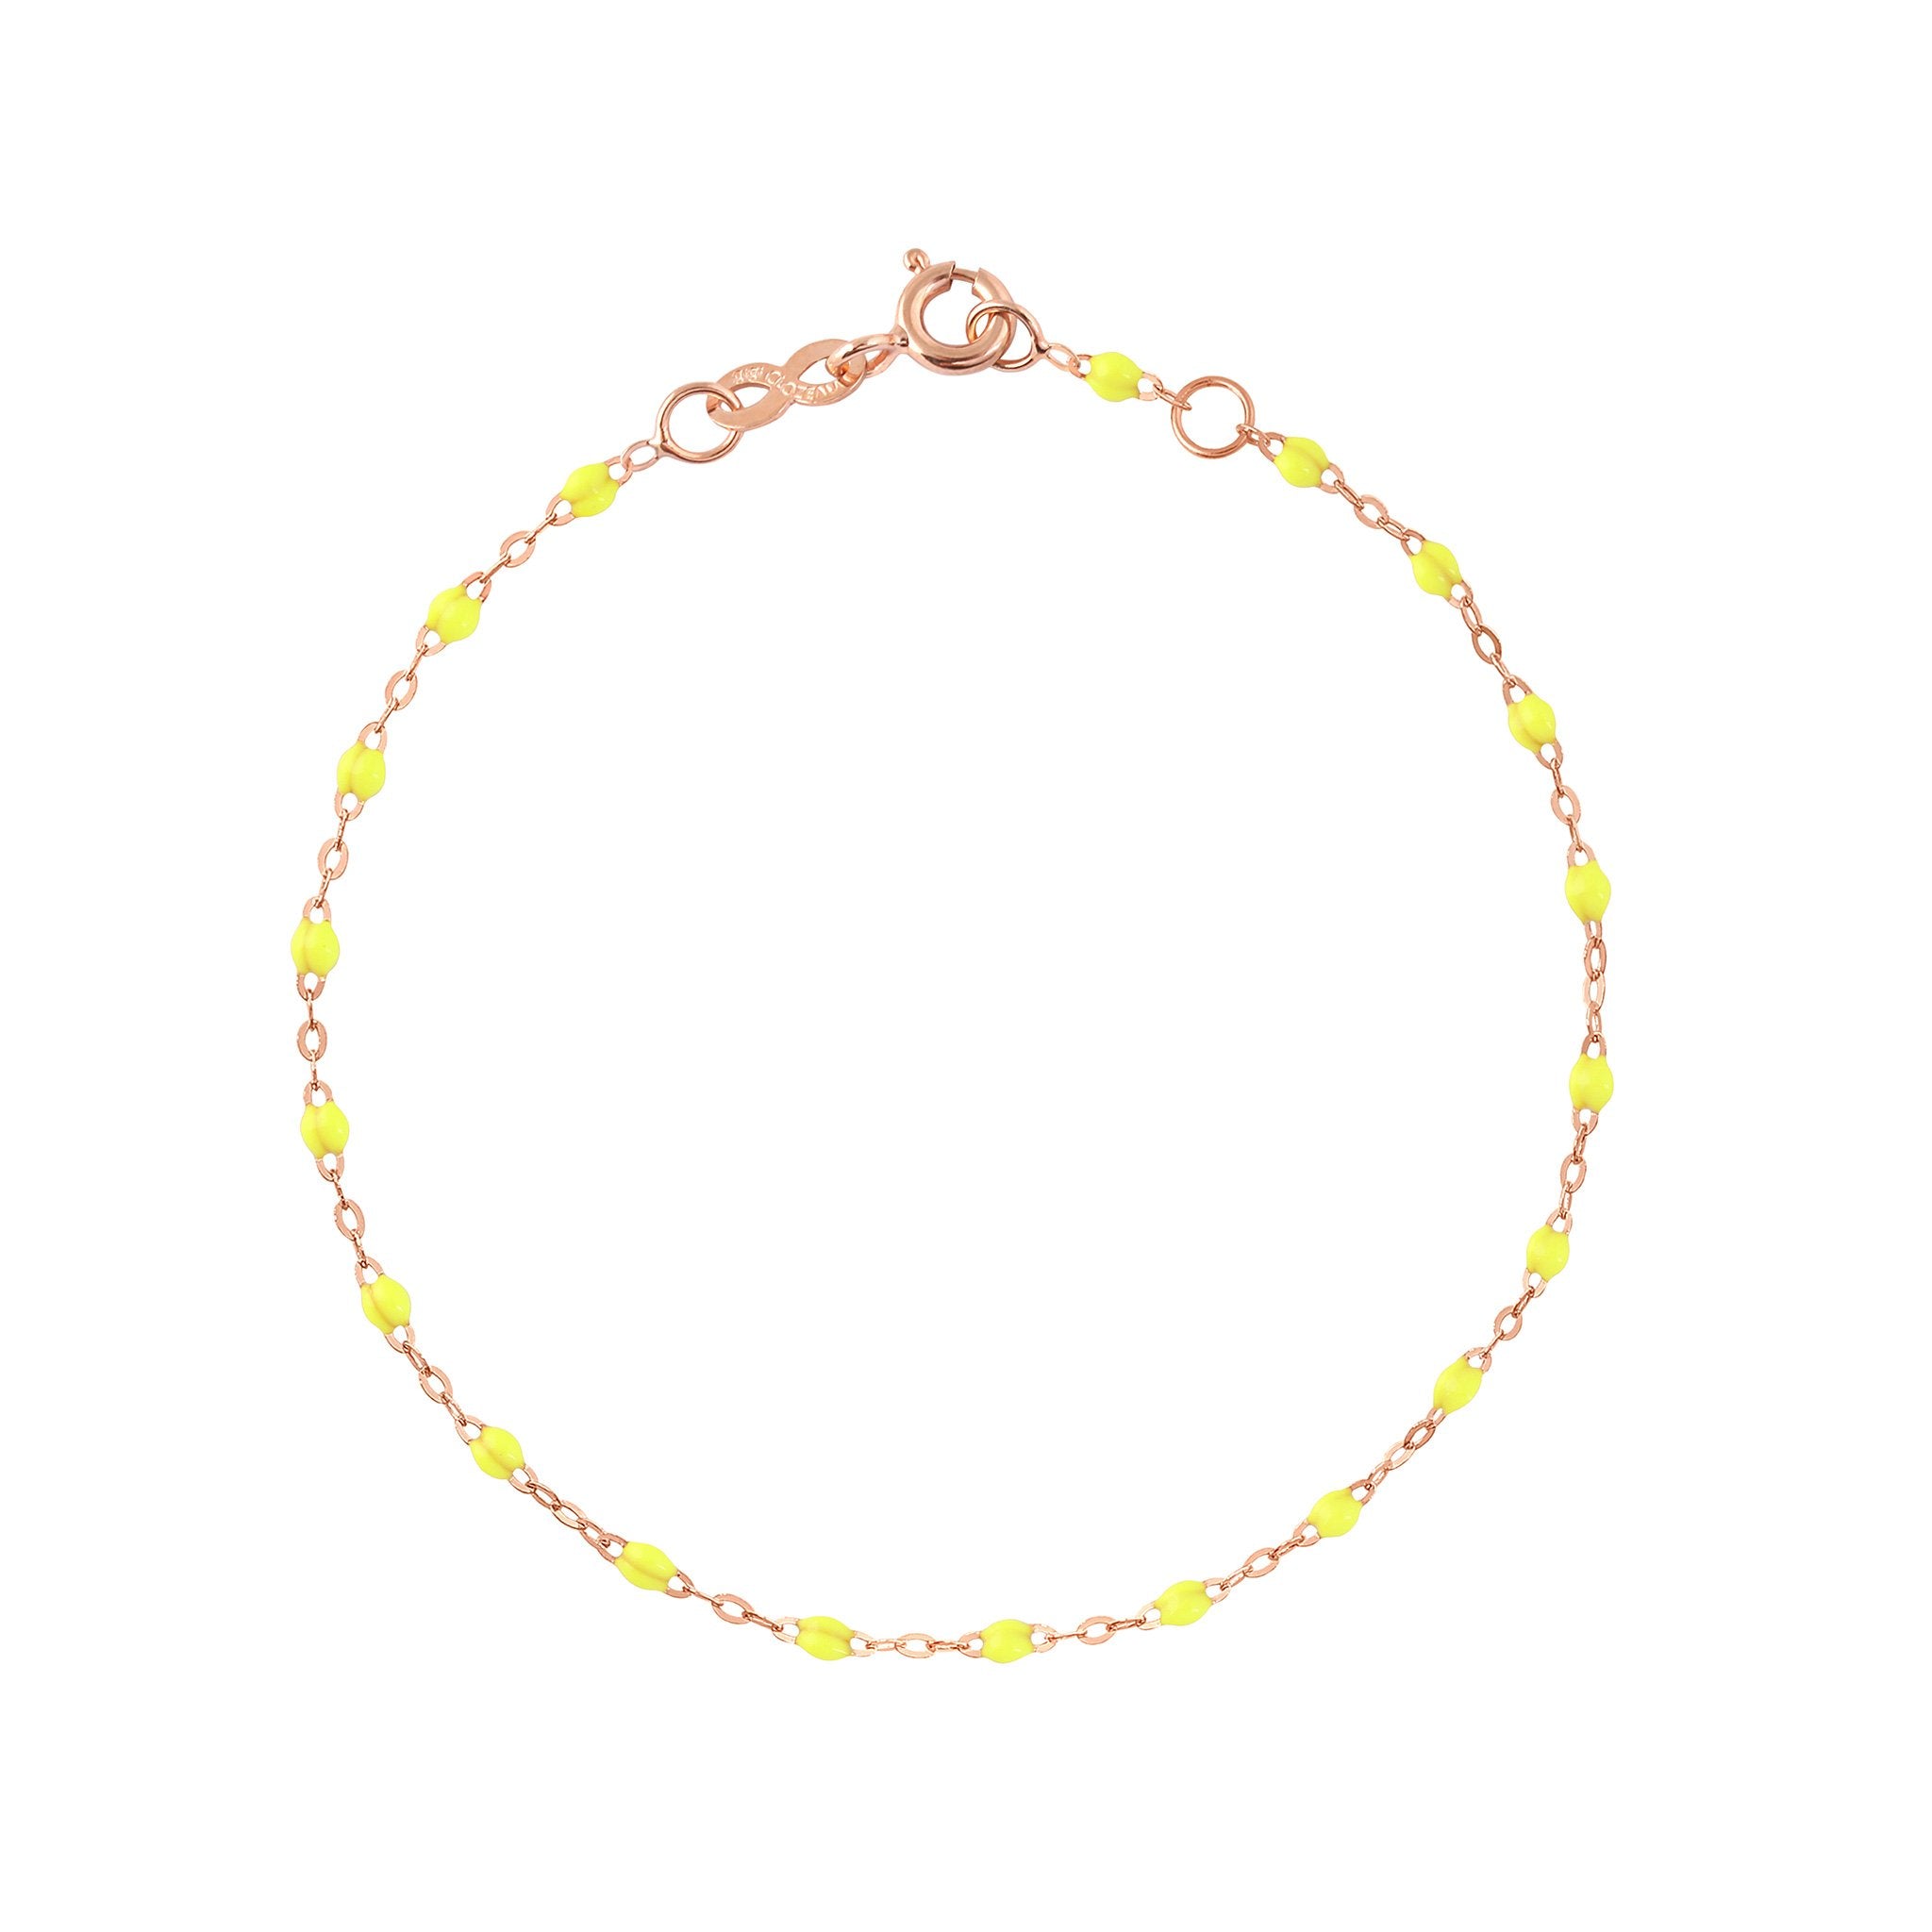 Bracelet jaune fluo Classique Gigi, or rose, 18 cm classique gigi Référence :  b3gi001r1818xx -1